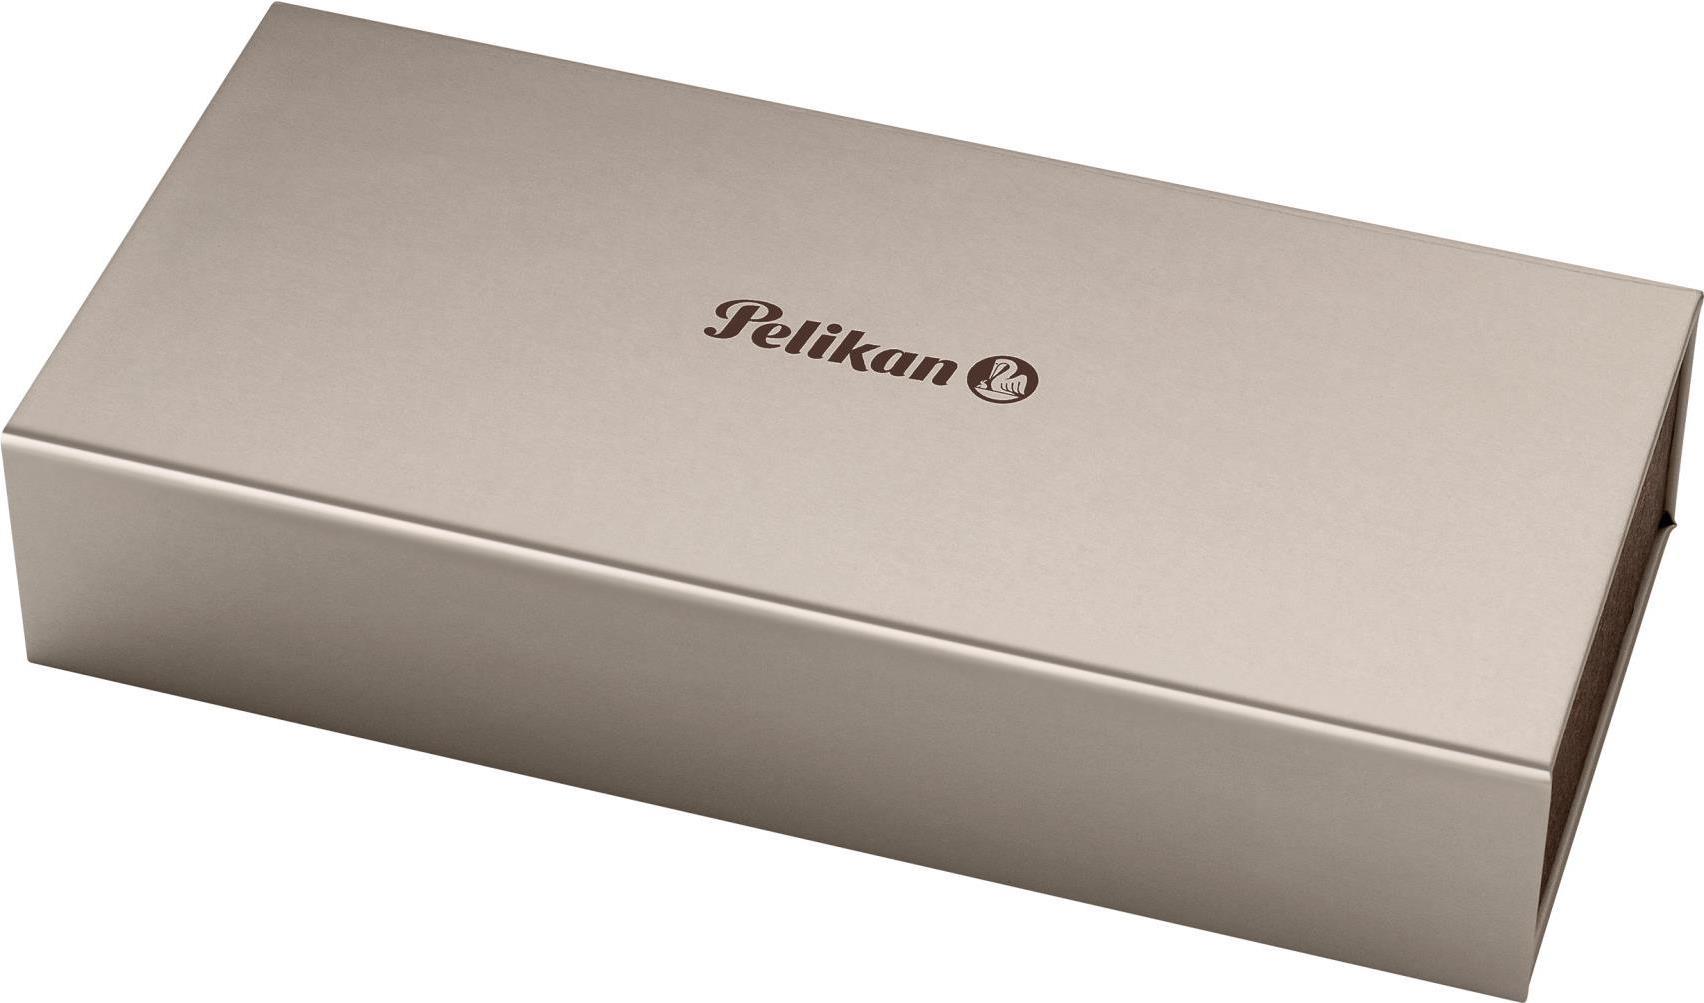 Pelikan M805 Füllfederhalter Integriertes Befüllsystem Schwarz - Silber 1 Stück(e) (925446) (geöffnet)